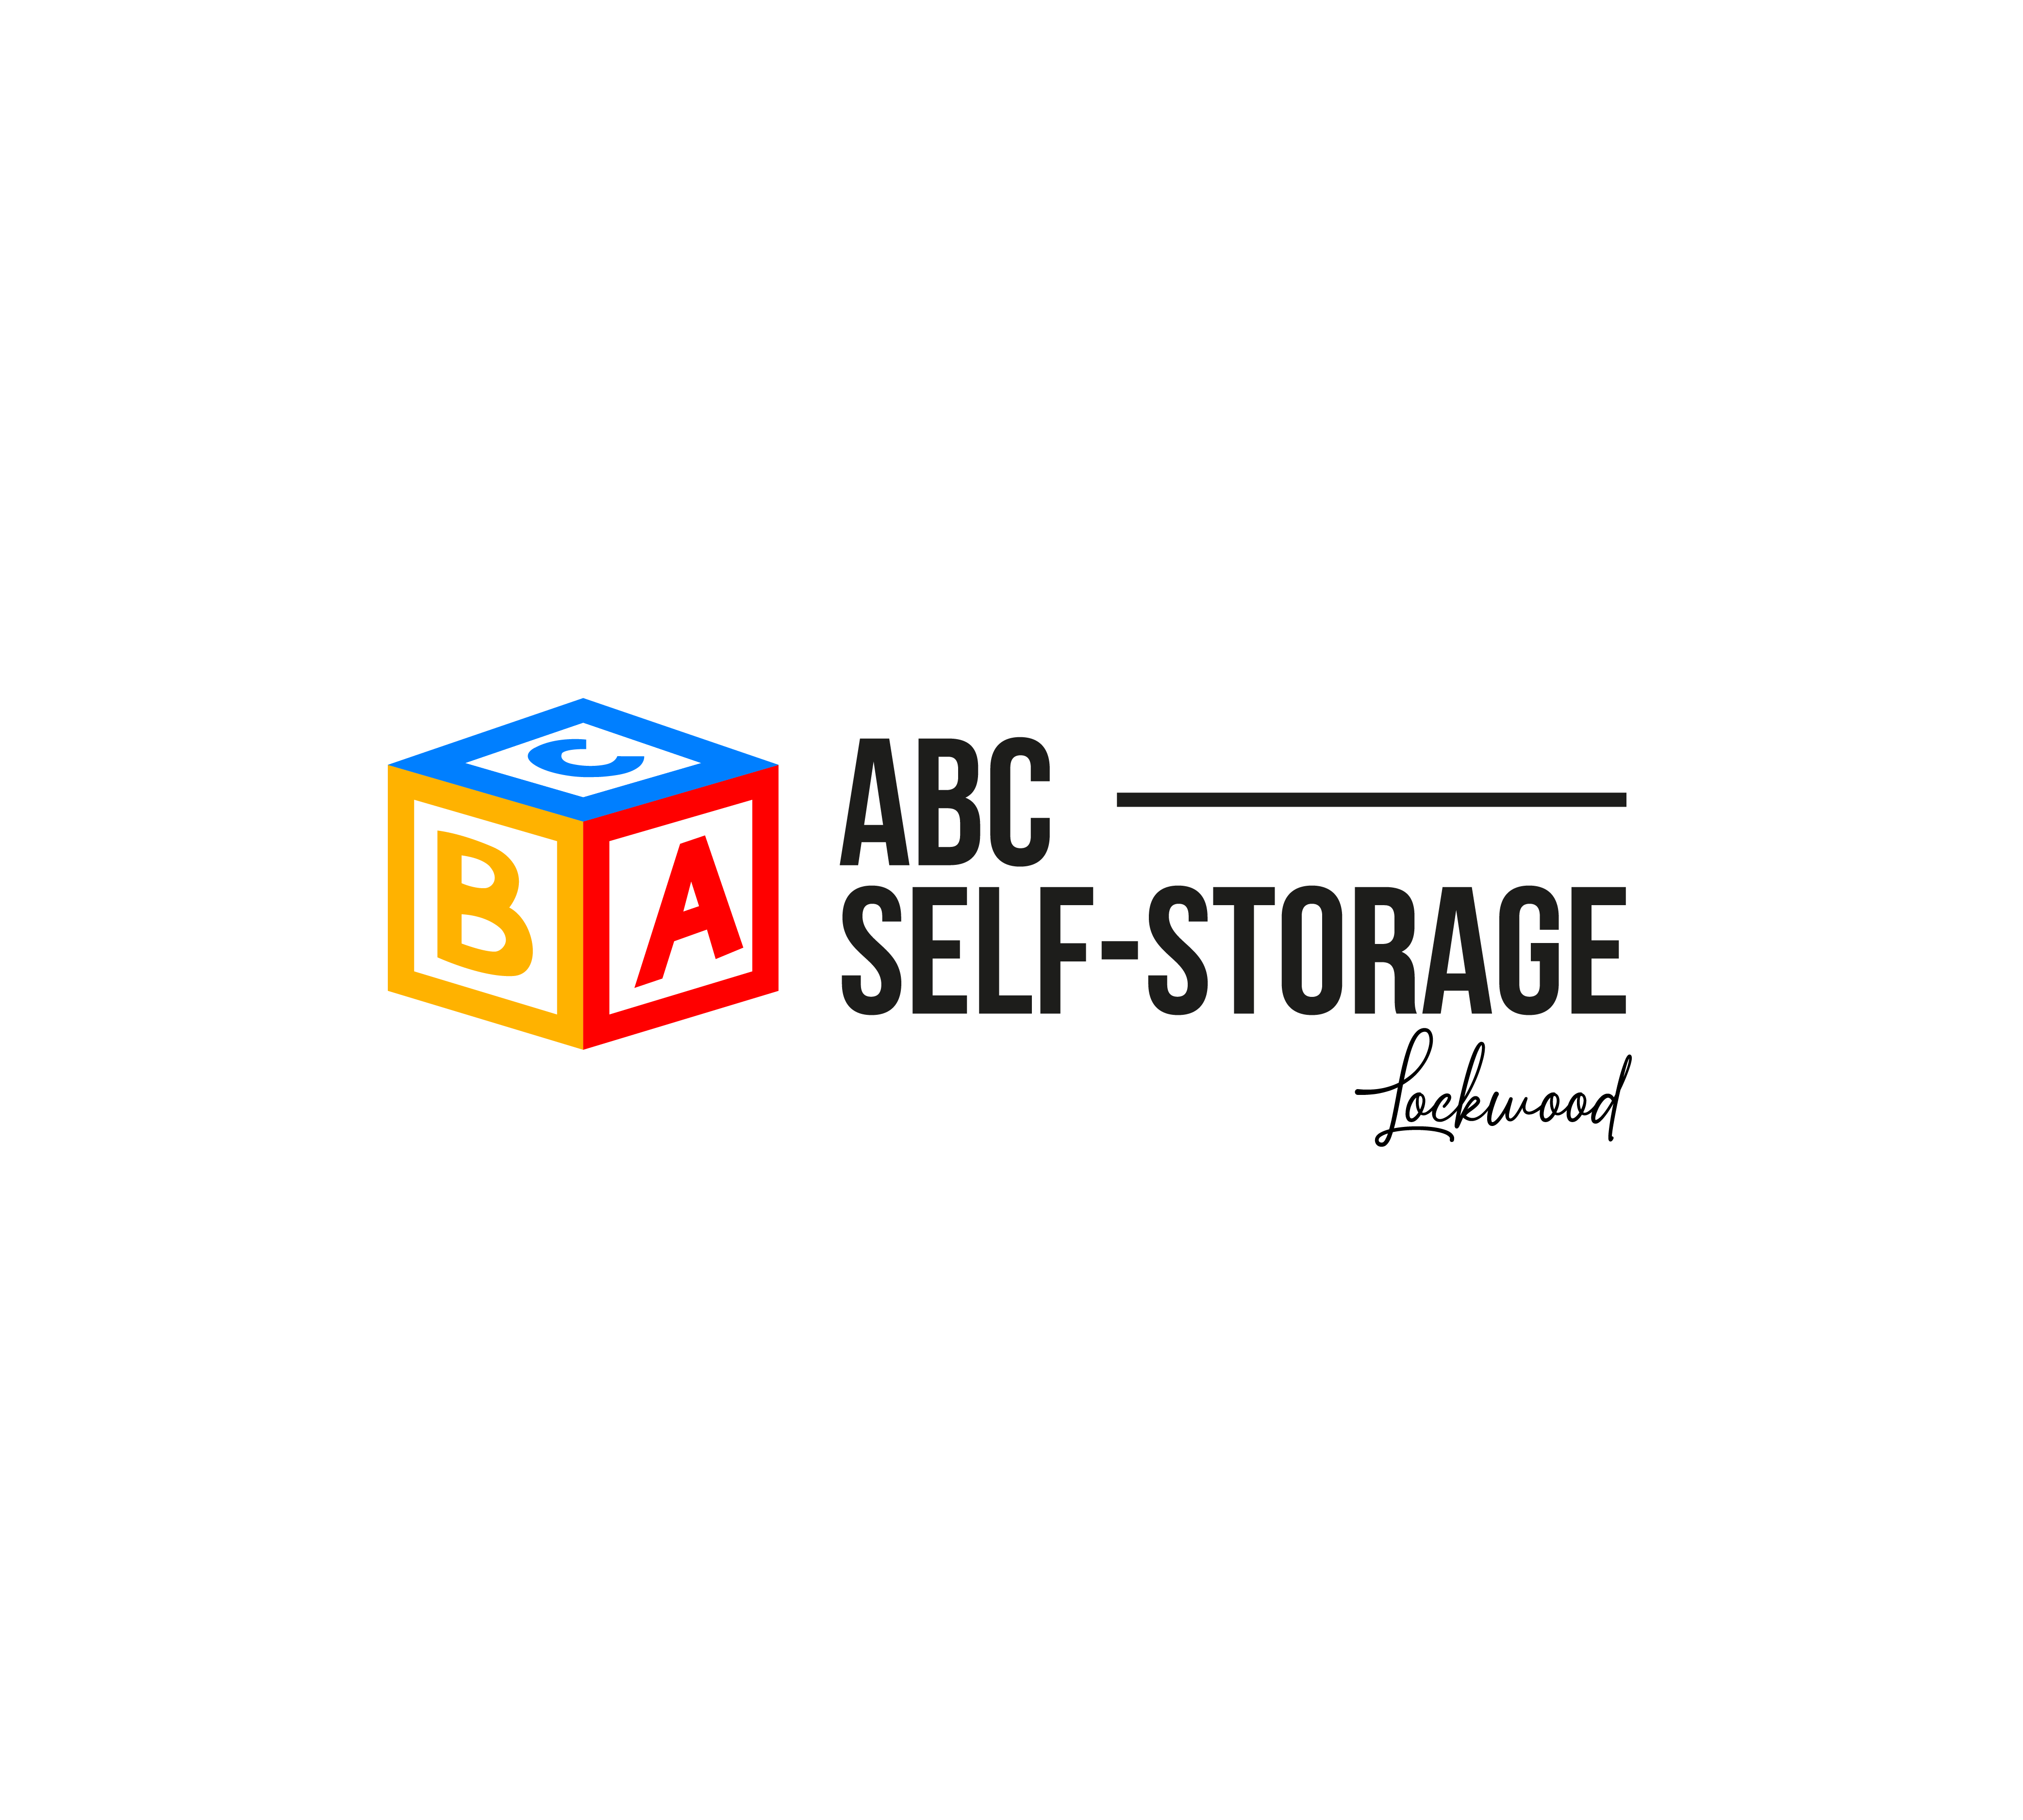 ABC Self Storage - Lockwood